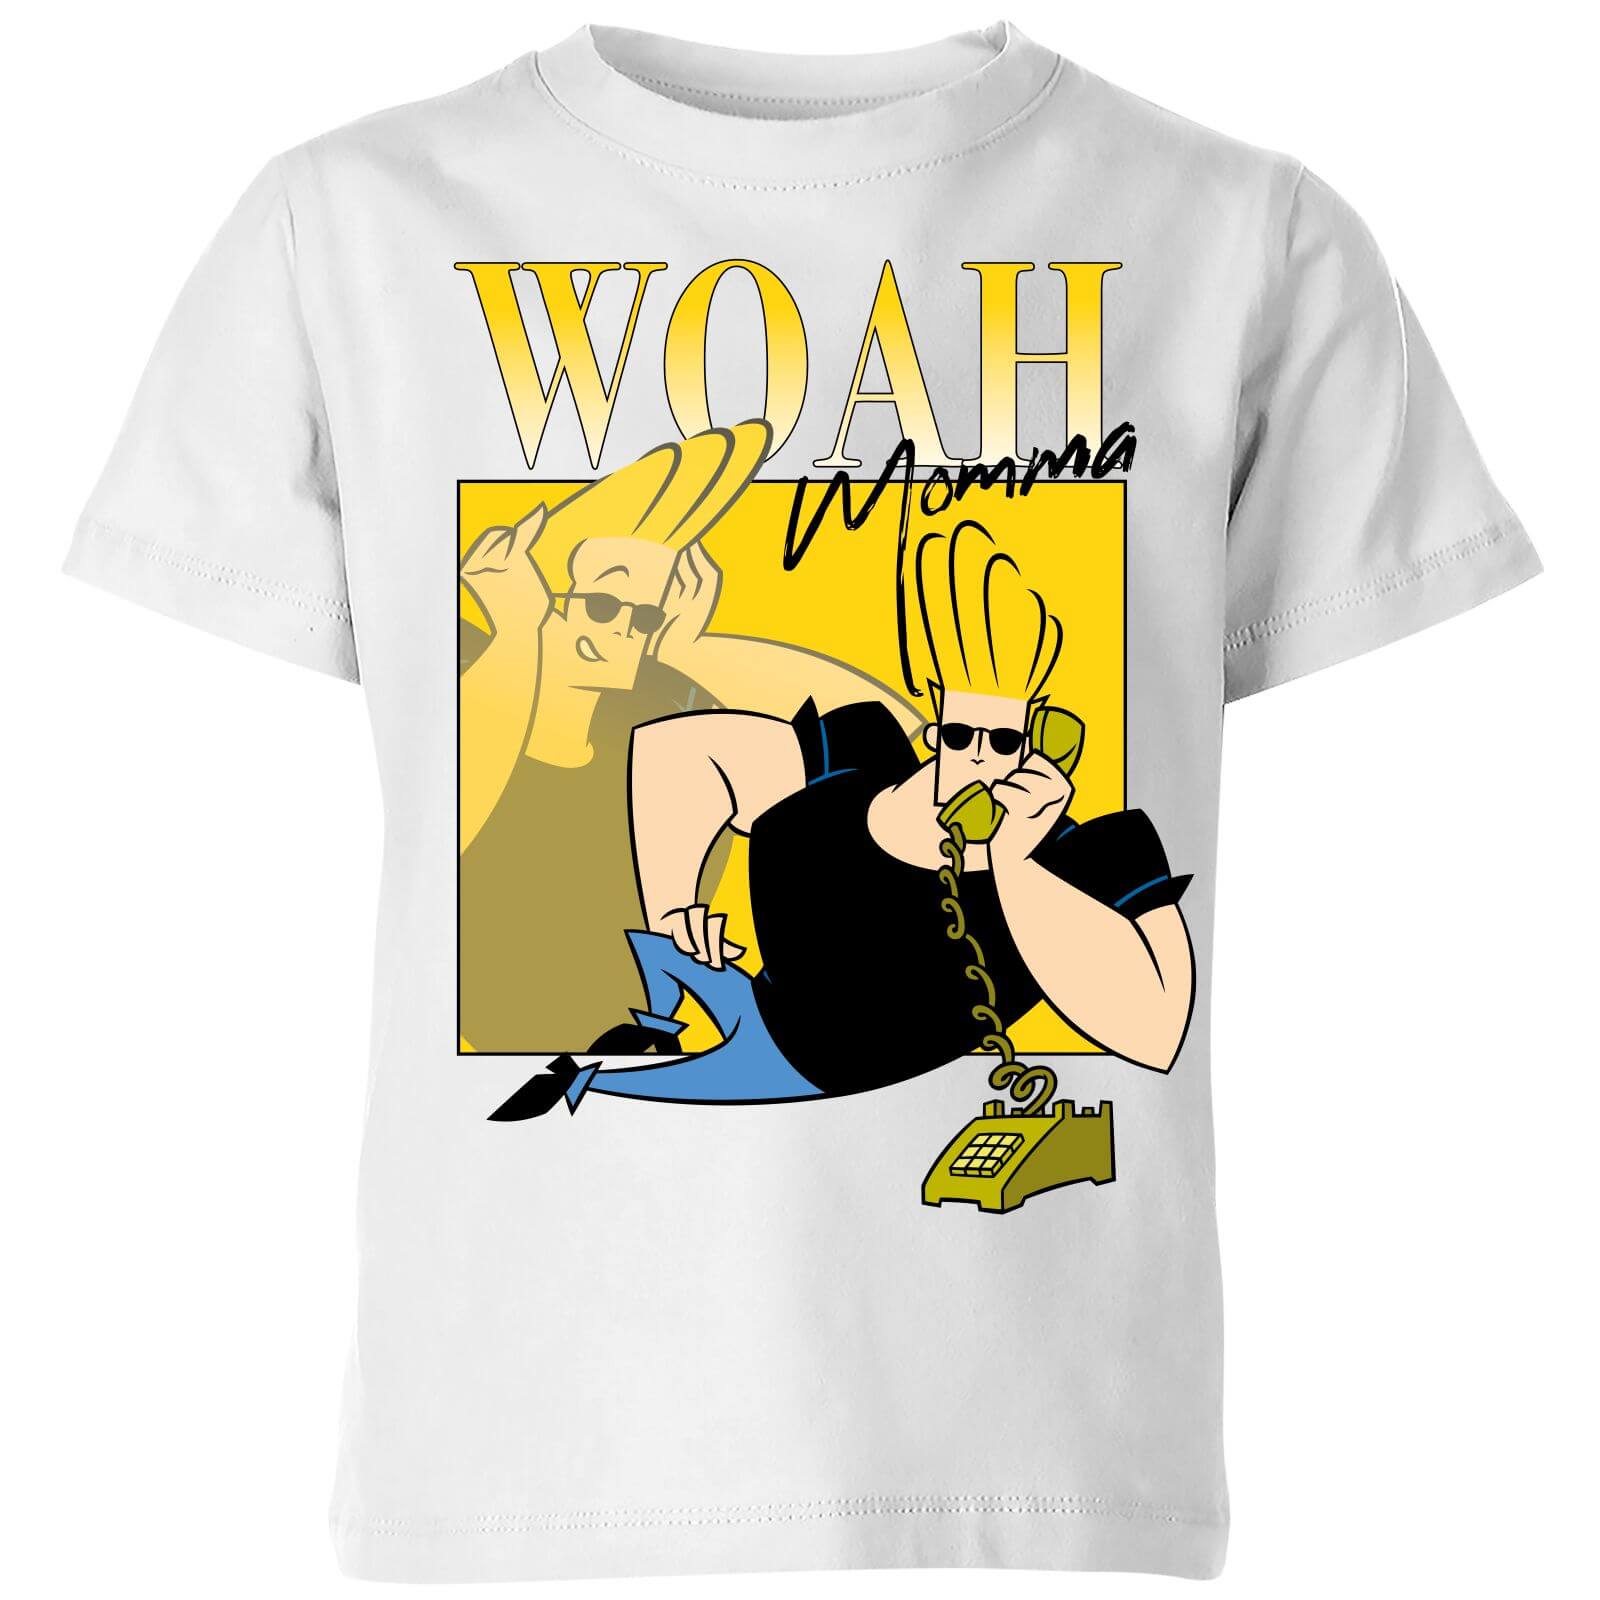 Cartoon Network Spin-Off Johnny Bravo 90s Photoshoot Kids' T-Shirt - White - 7-8 Years - White